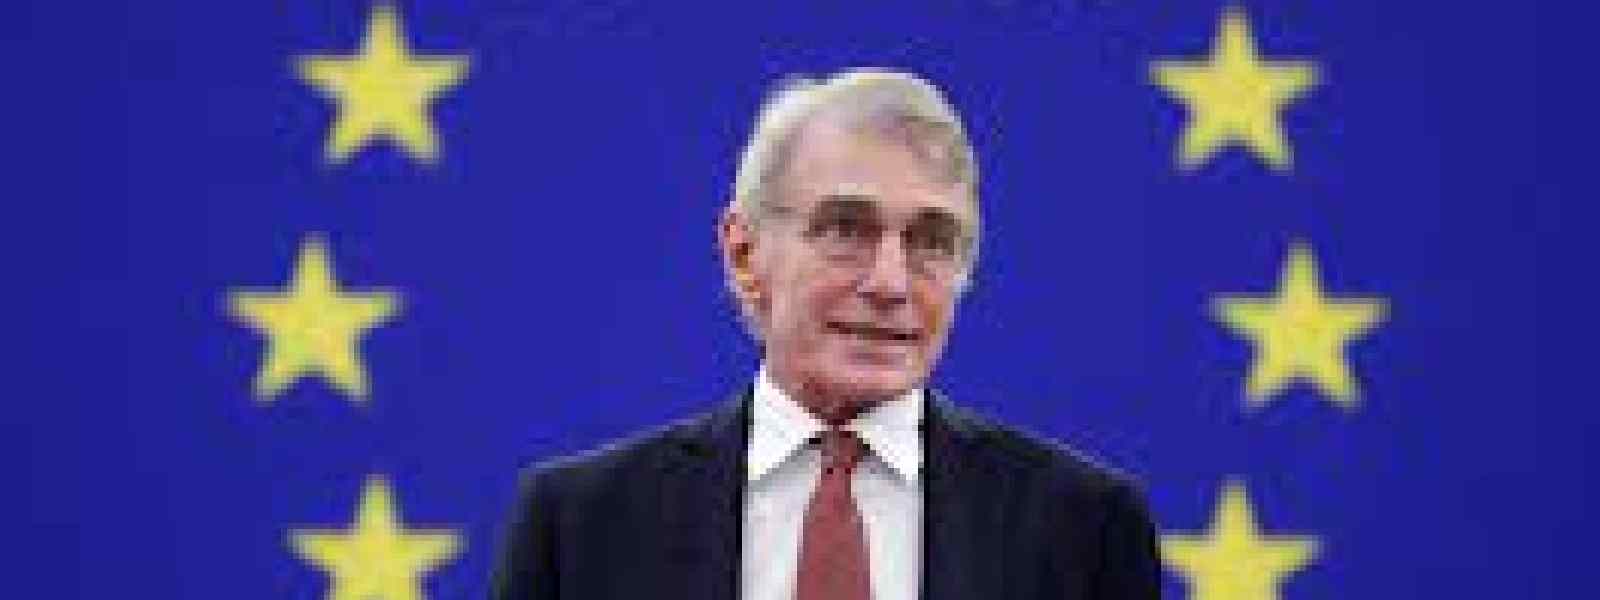 Sassoli, EU Parliament President has died